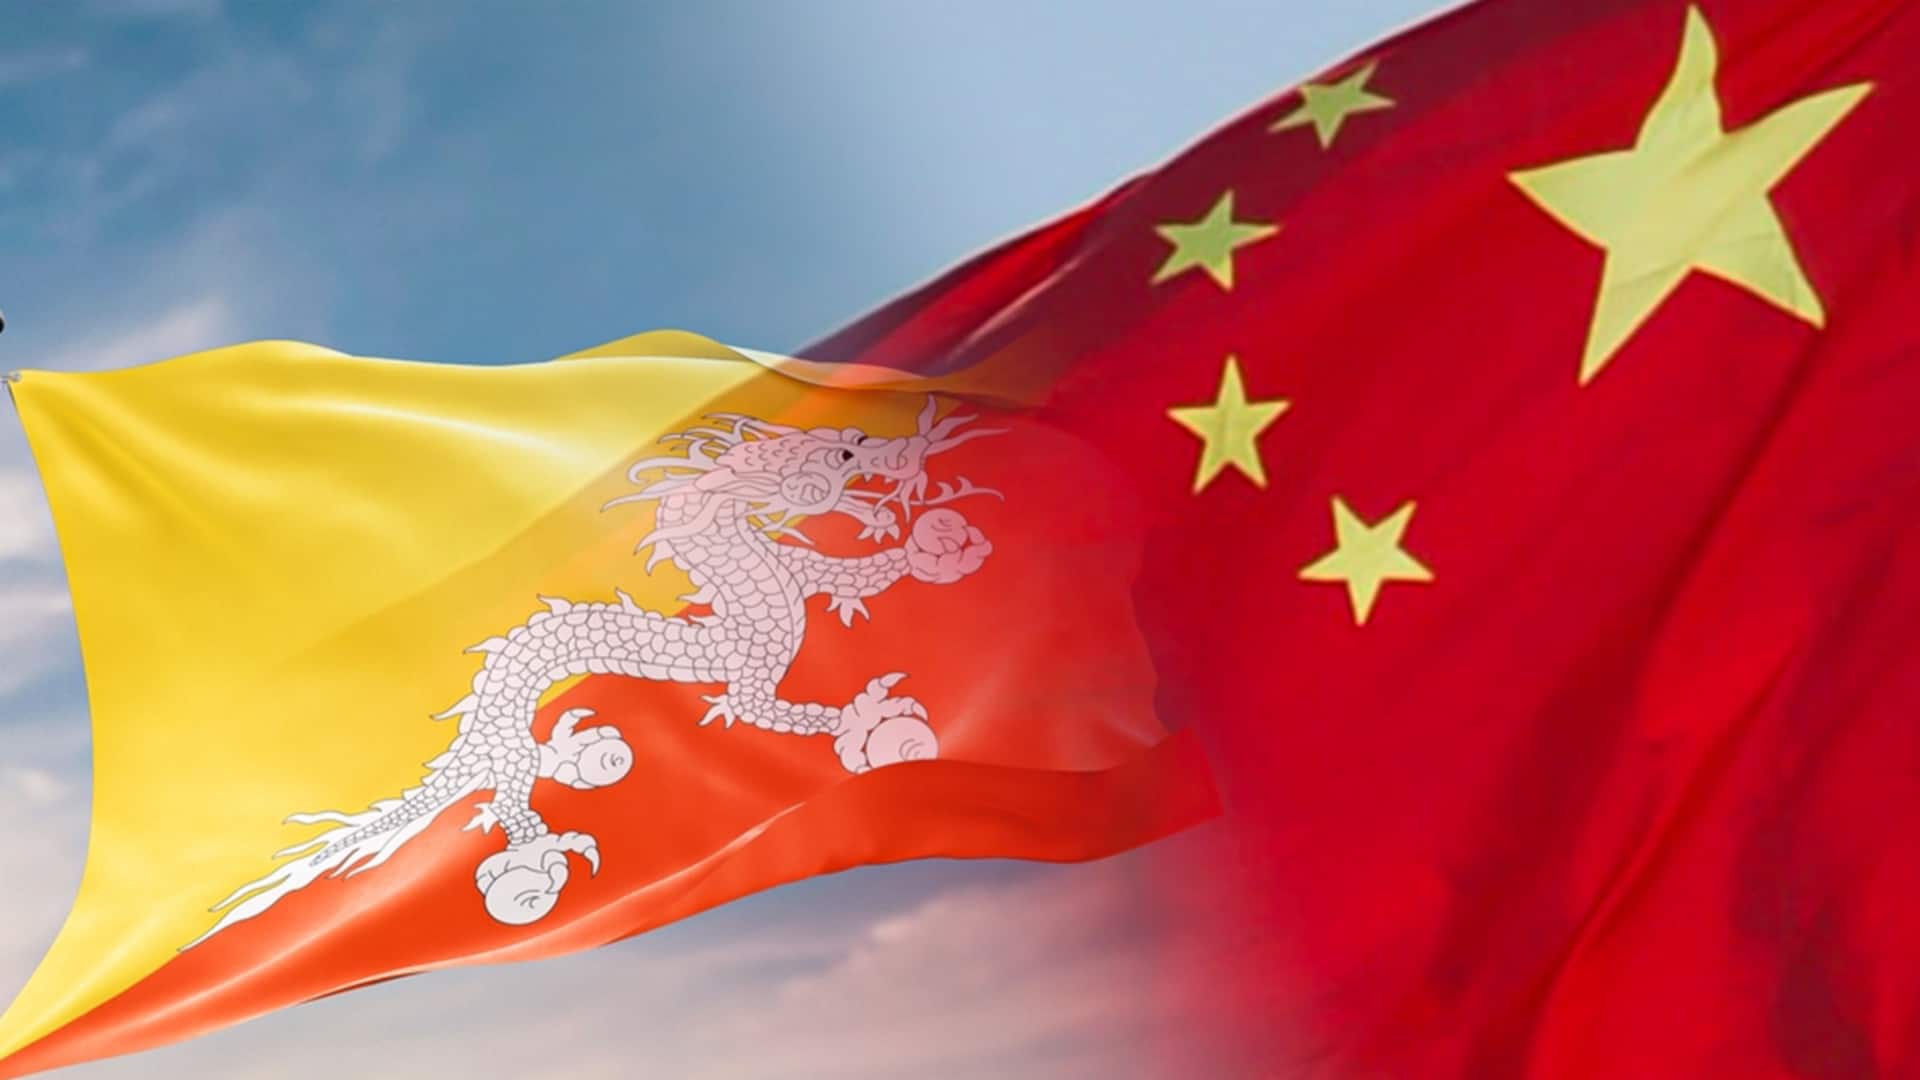 चीन ने भूटान के क्षेत्र में घुसपैठ कर निर्माण किया, भारत की चिंता बढ़ी- रिपोर्ट  